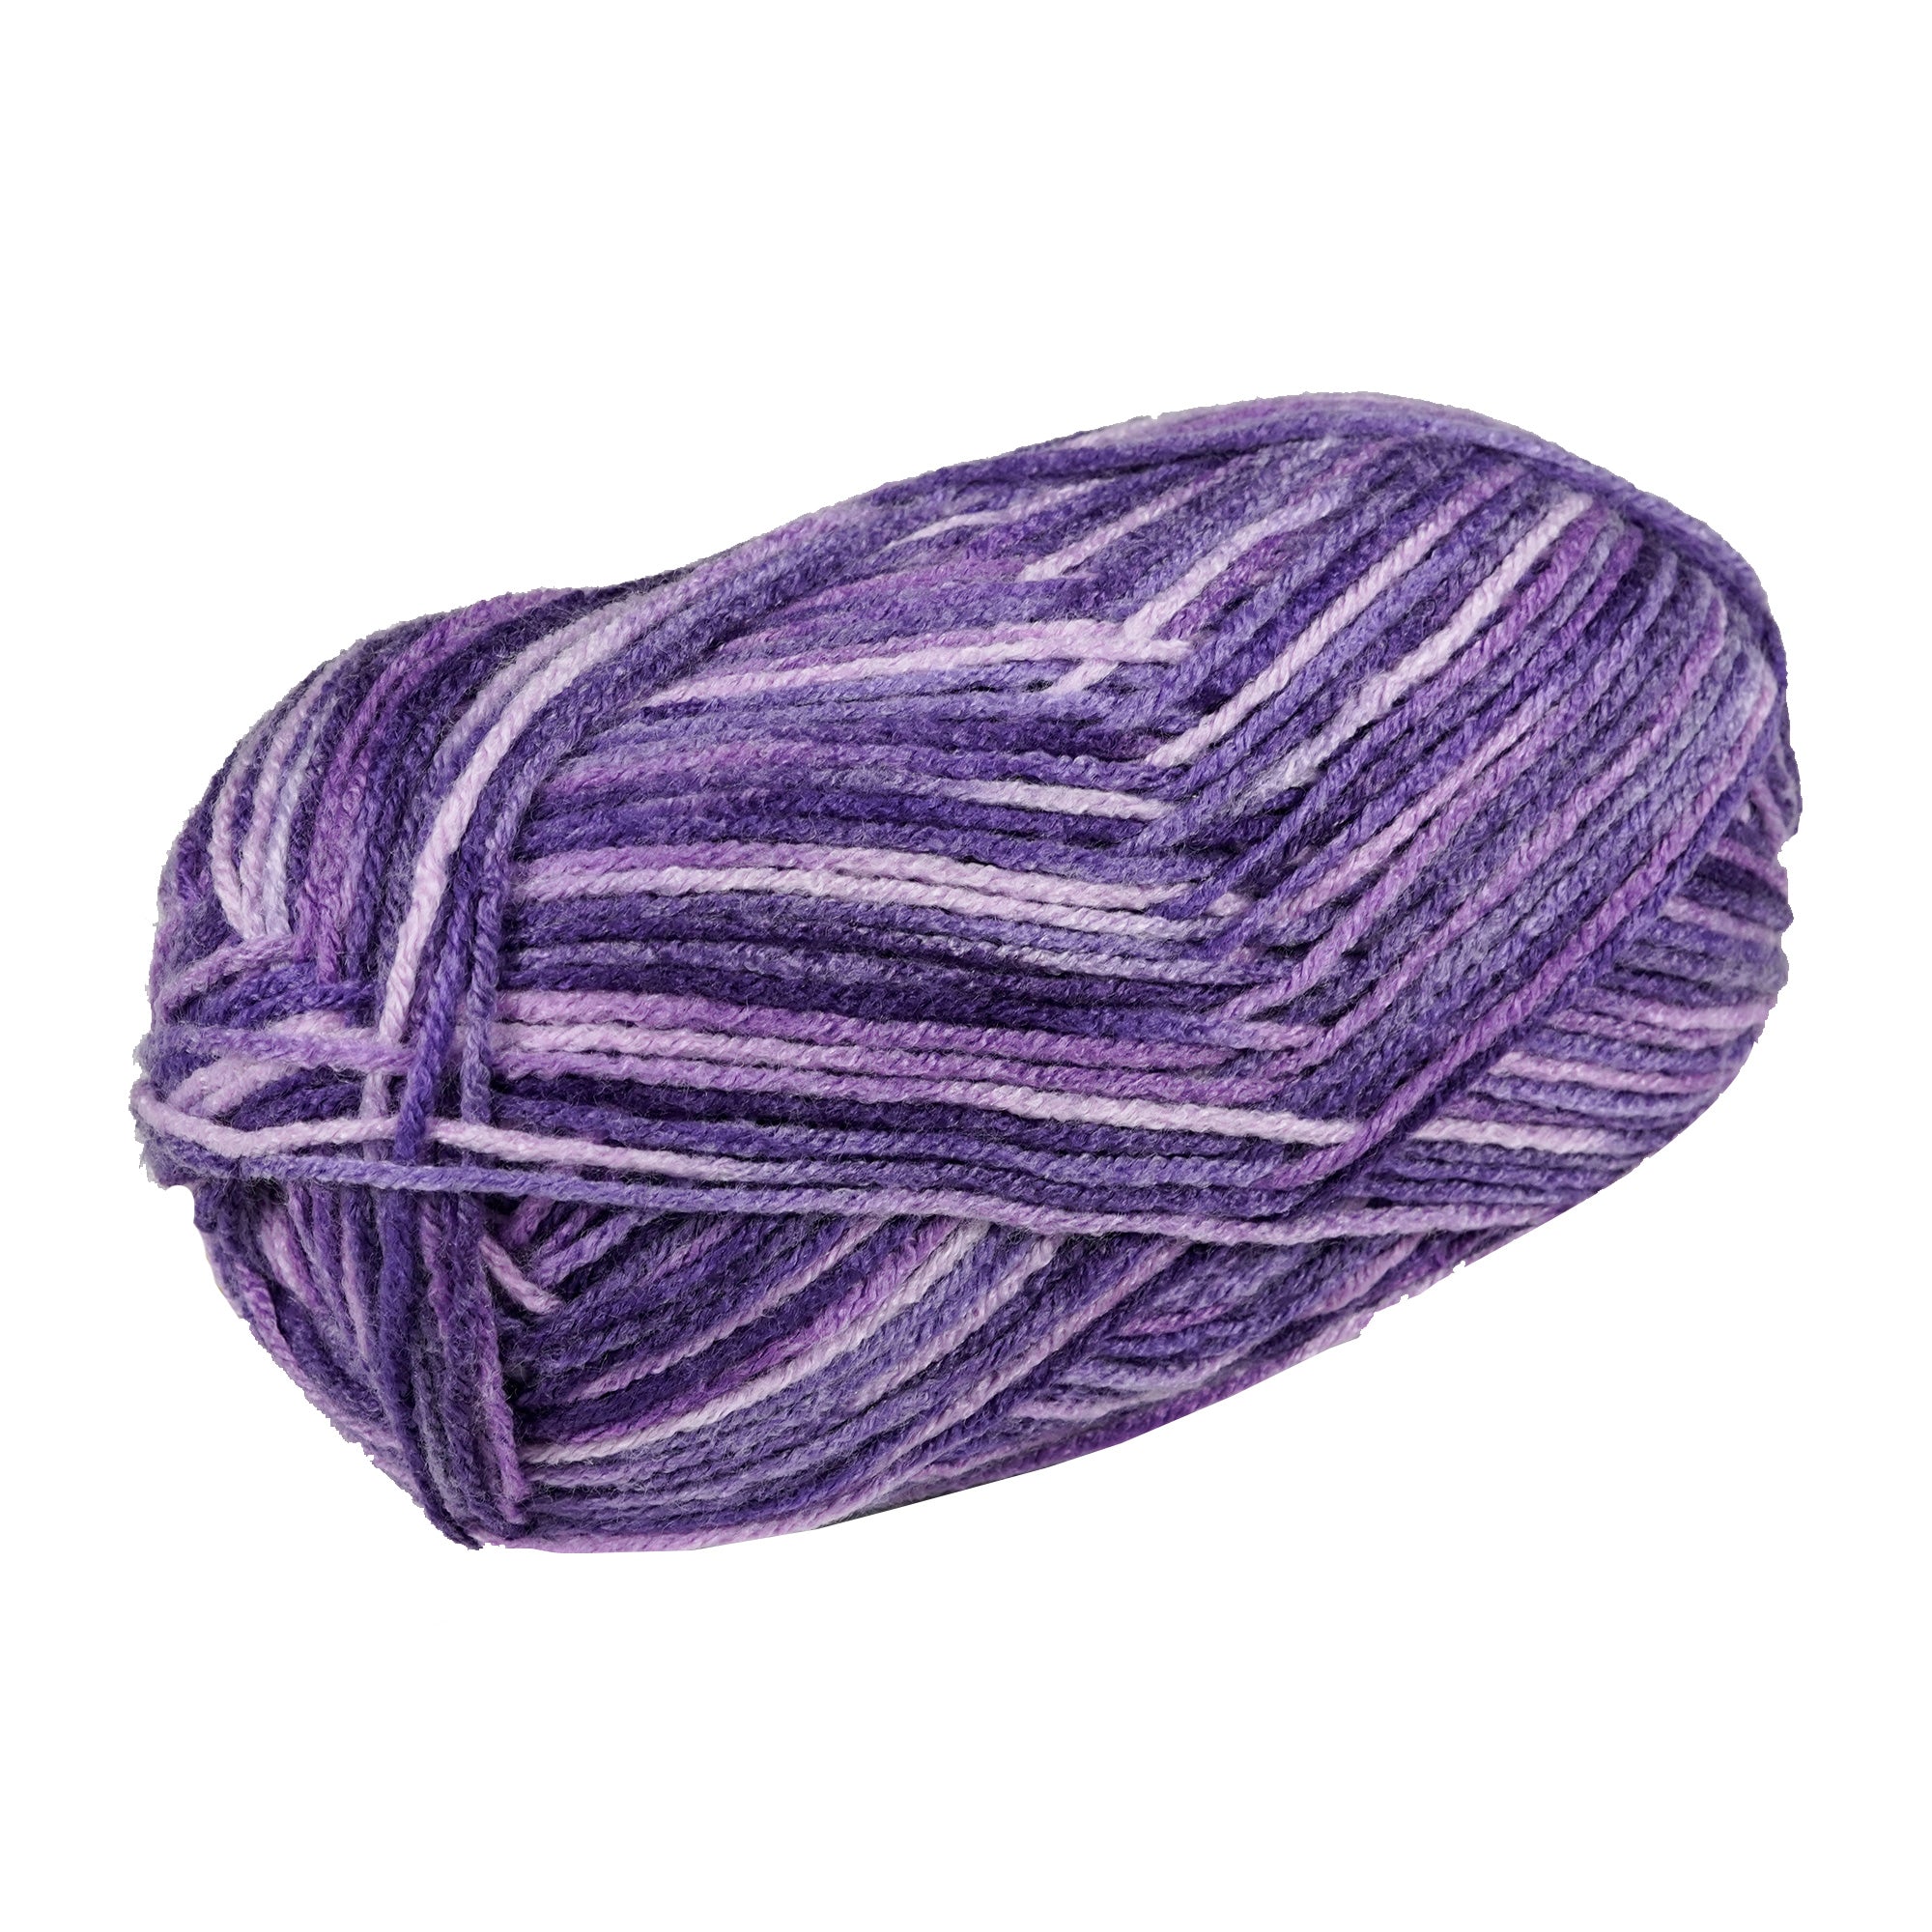 Porta Craft Acrylic Yarn 100% 100Gm 189M 8Ply Multi Purple Popper